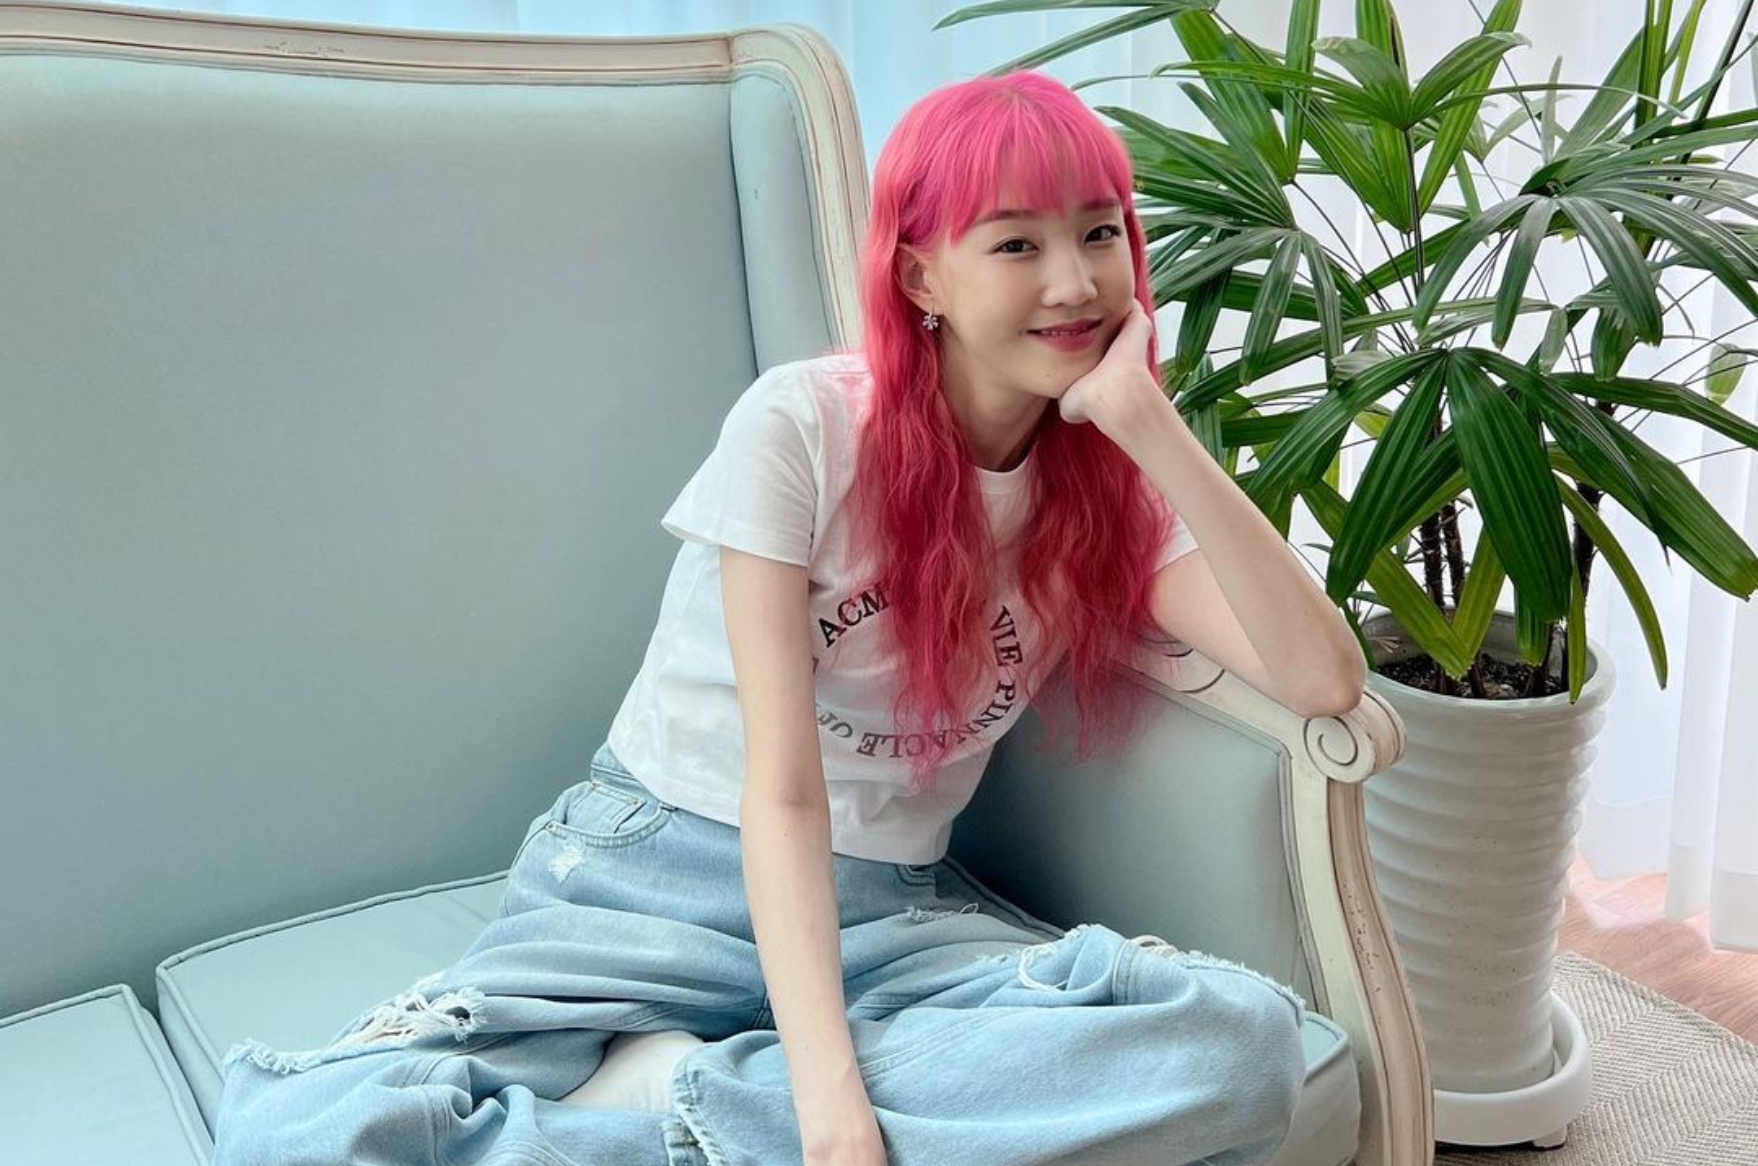 Empresa divulga autópsia de Park Boram, cantora de kpop morta aos 30 anos